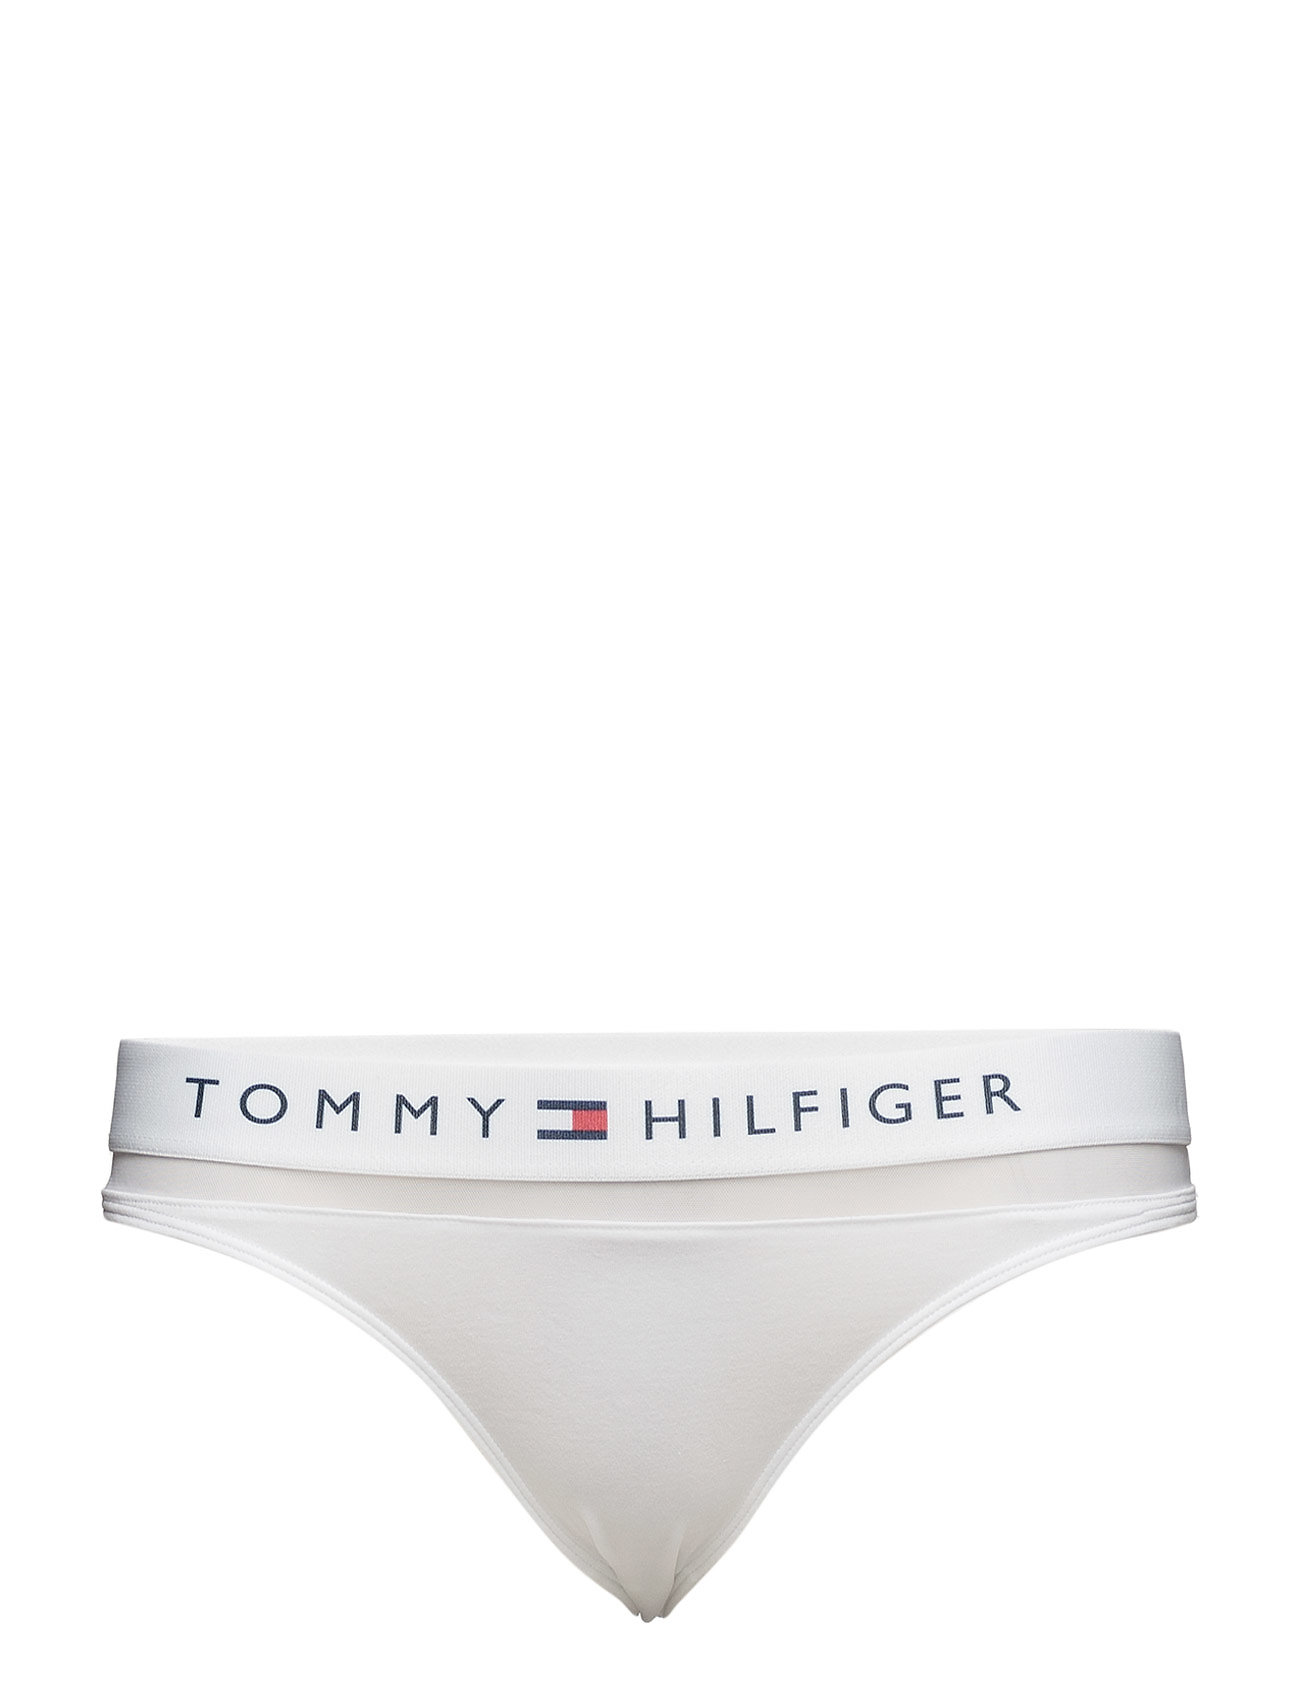 Sort Tommy Thong G-streng Undertøj Hvid Tommy g-strenge for dame - Pashion.dk